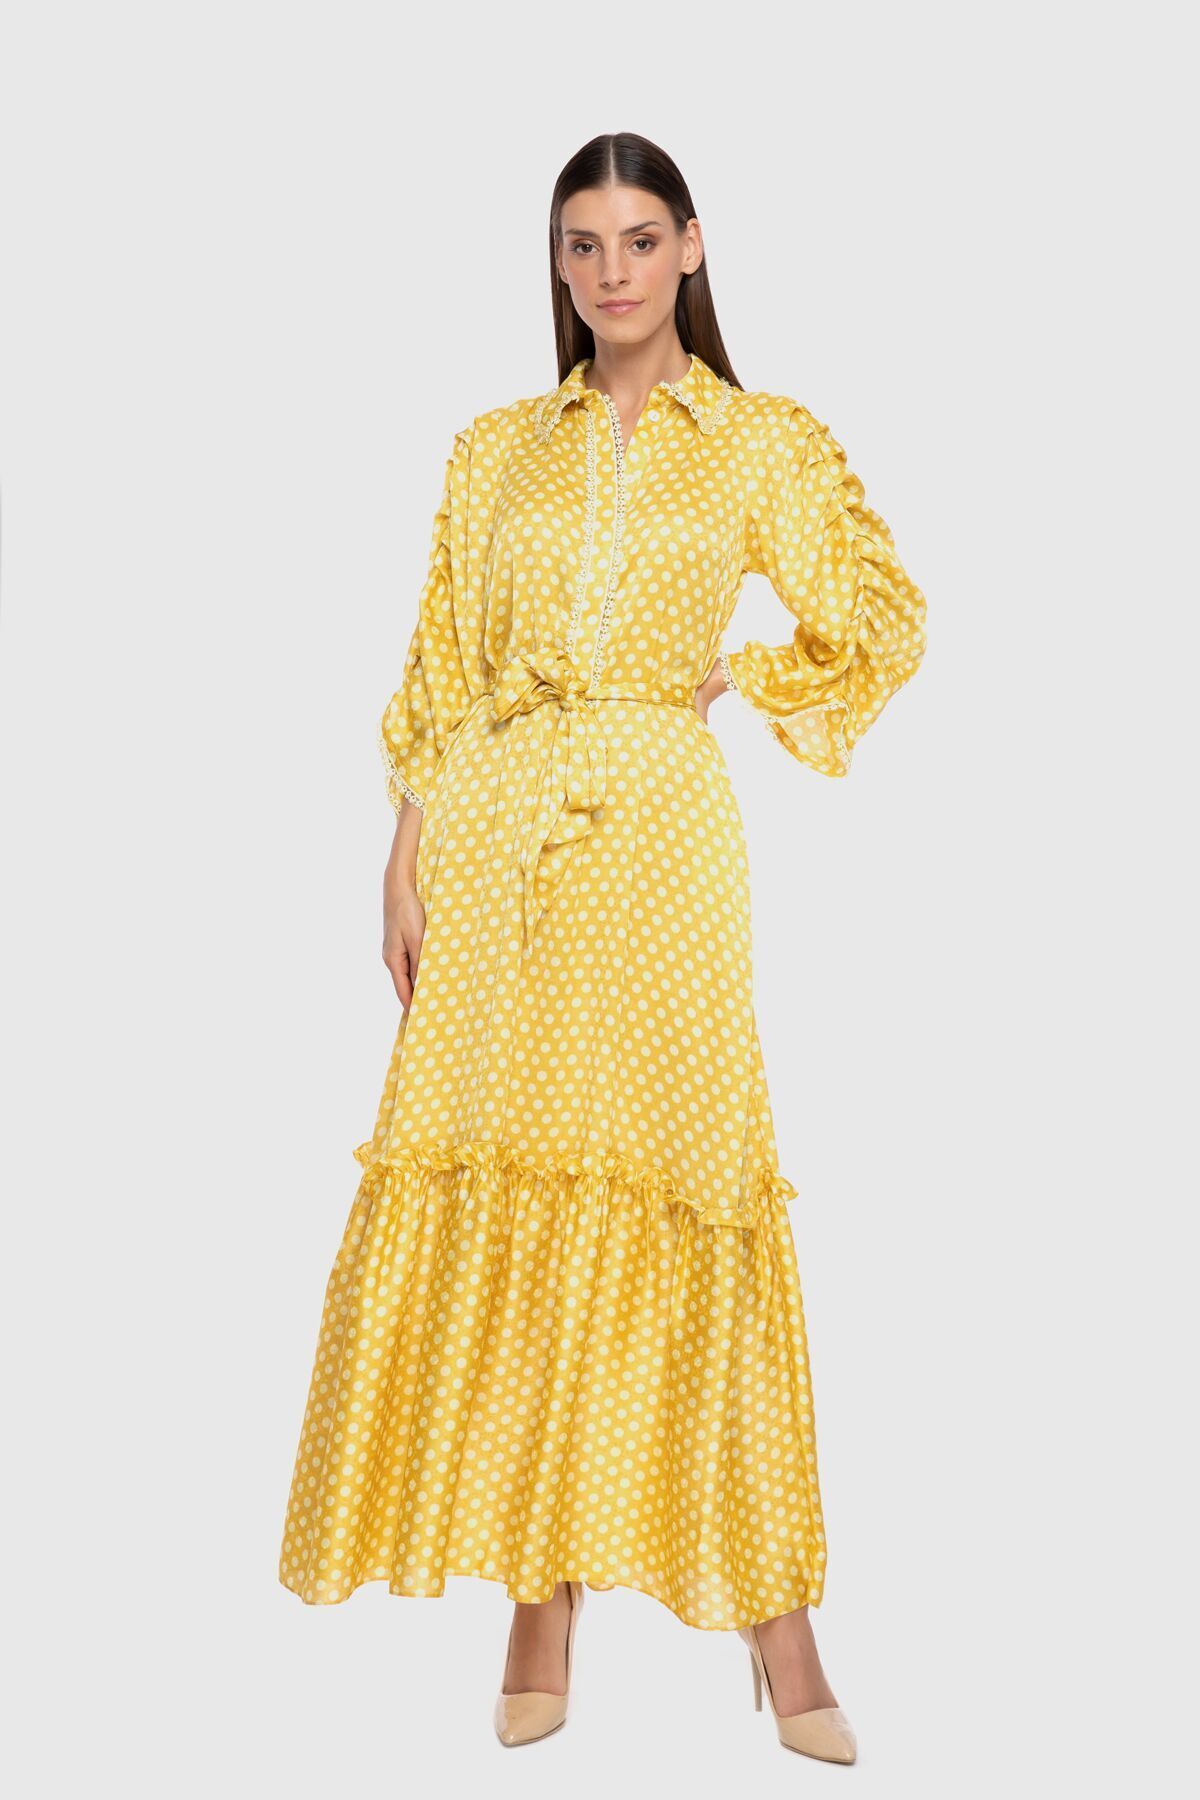 GIZIA Kolları Pili Detaylı Uzun Puantiye Desenli Sarı Elbise